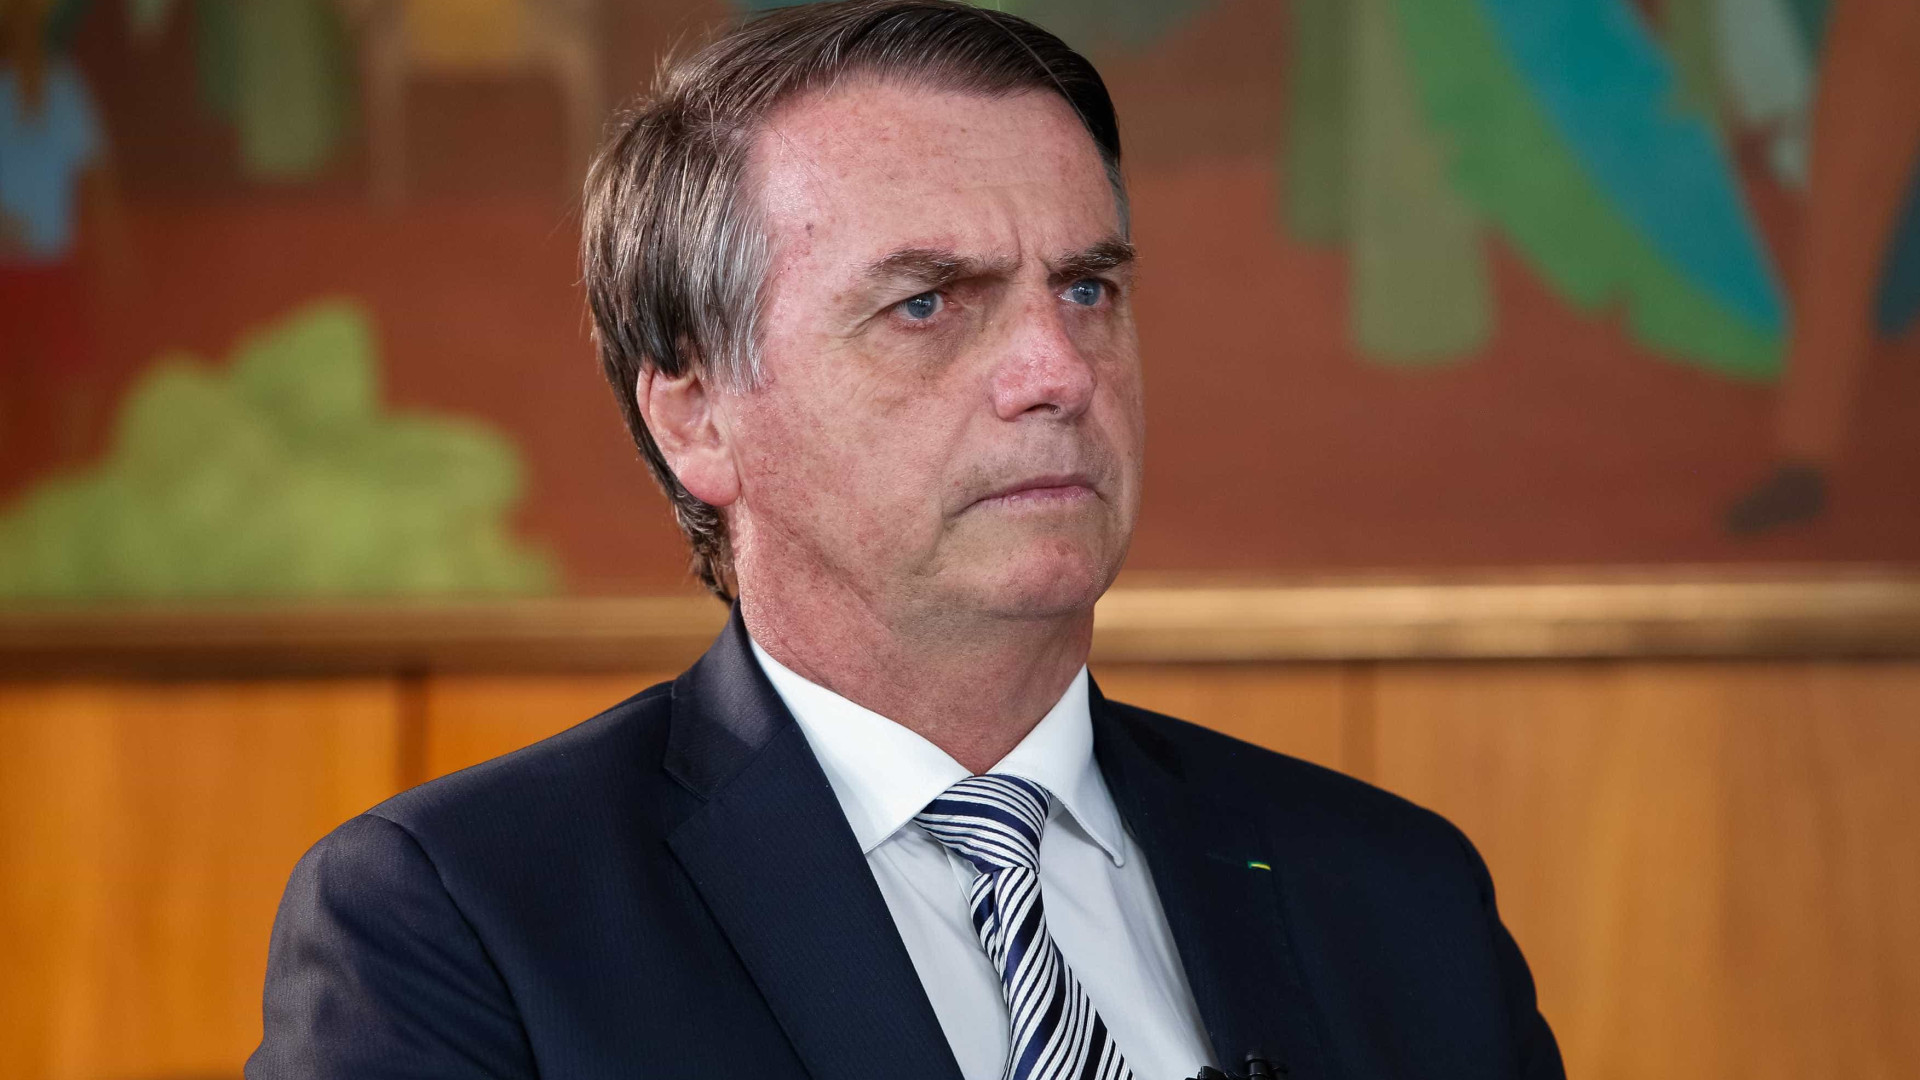 Sindicatos tentam anular indicação de 'amigo' de Bolsonaro na Petrobras